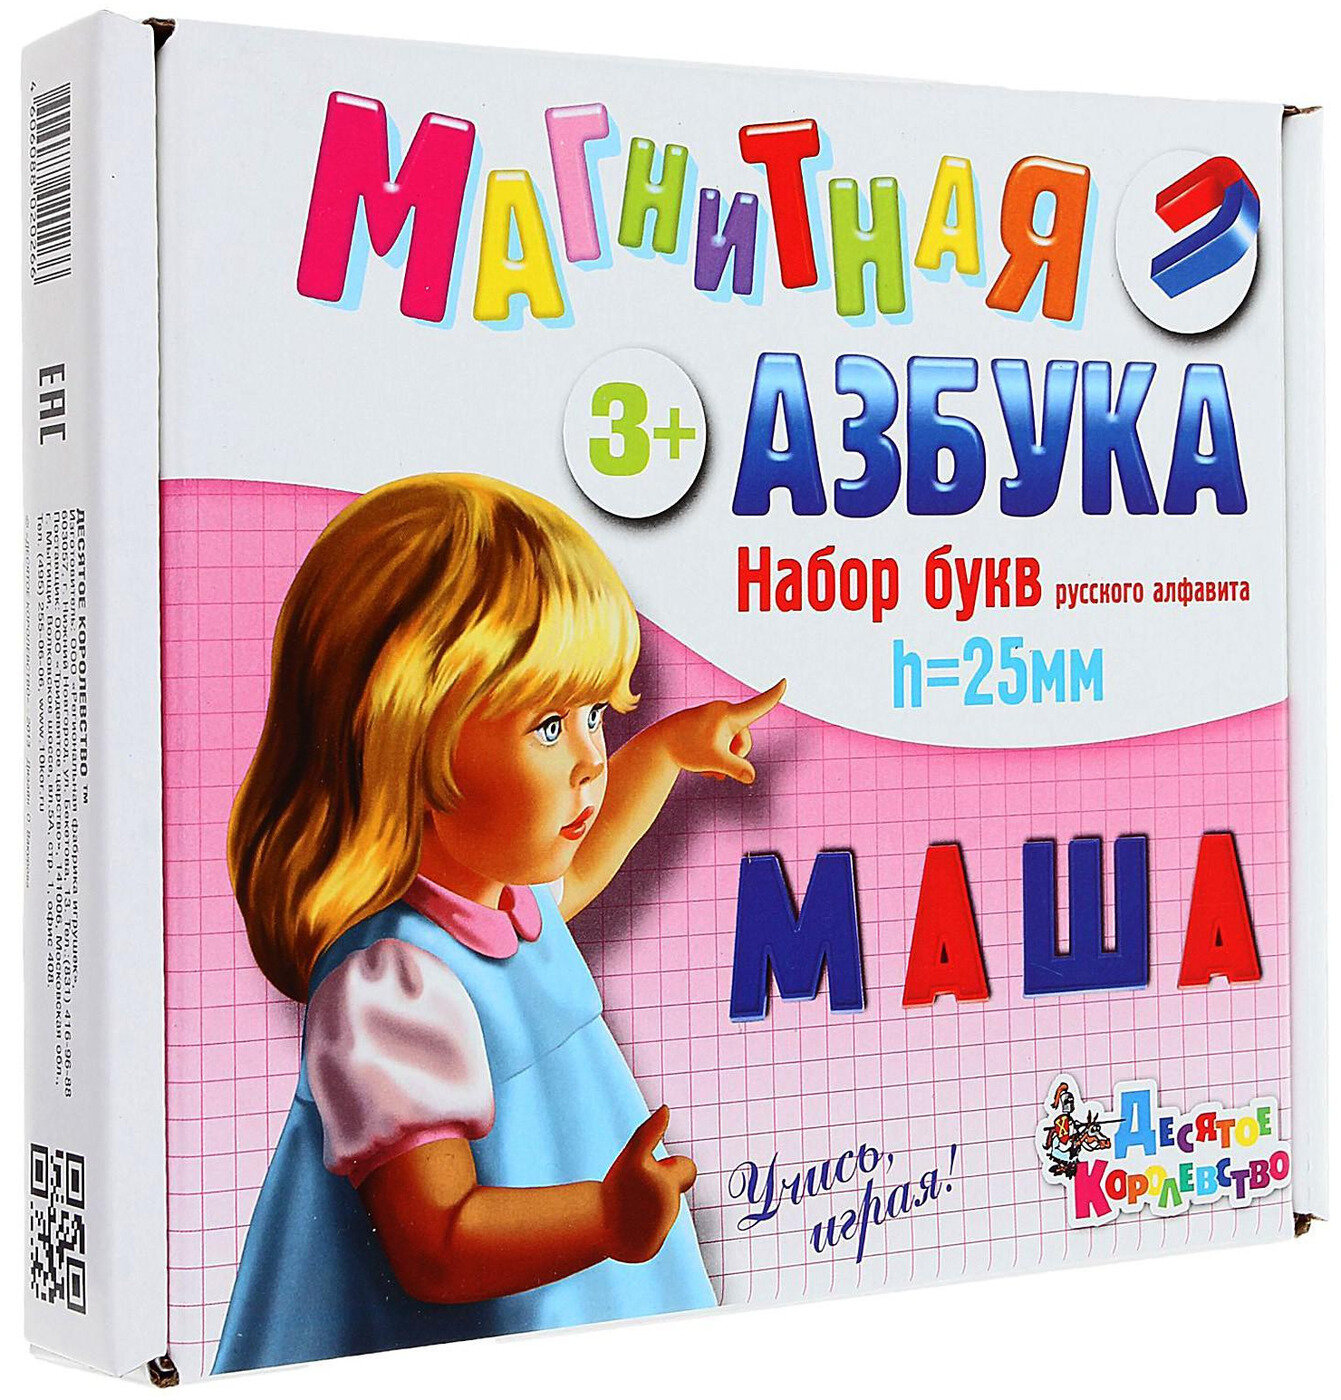 Развивающая магнитная игра "Магнитная азбука. Набор букв русского алфавита", дидактический материал, 106 магнитных пластмассовых элементов